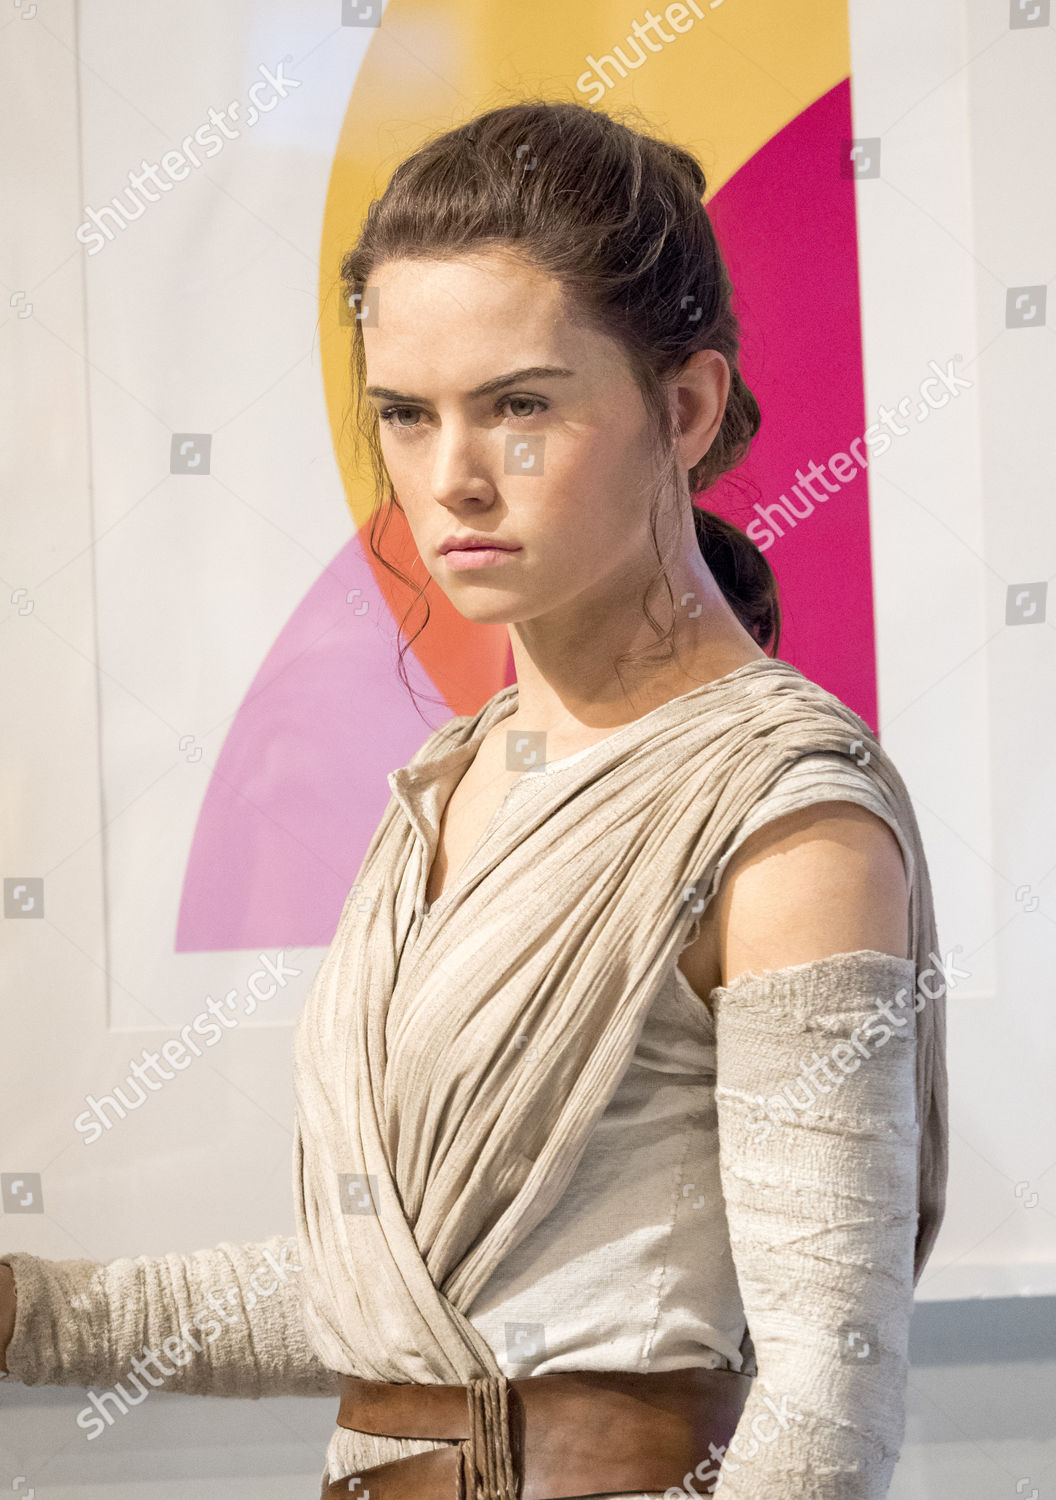 Rey Star Wars Waxwork - Foto de stock de contenido editorial: imagen de  stock | Shutterstock